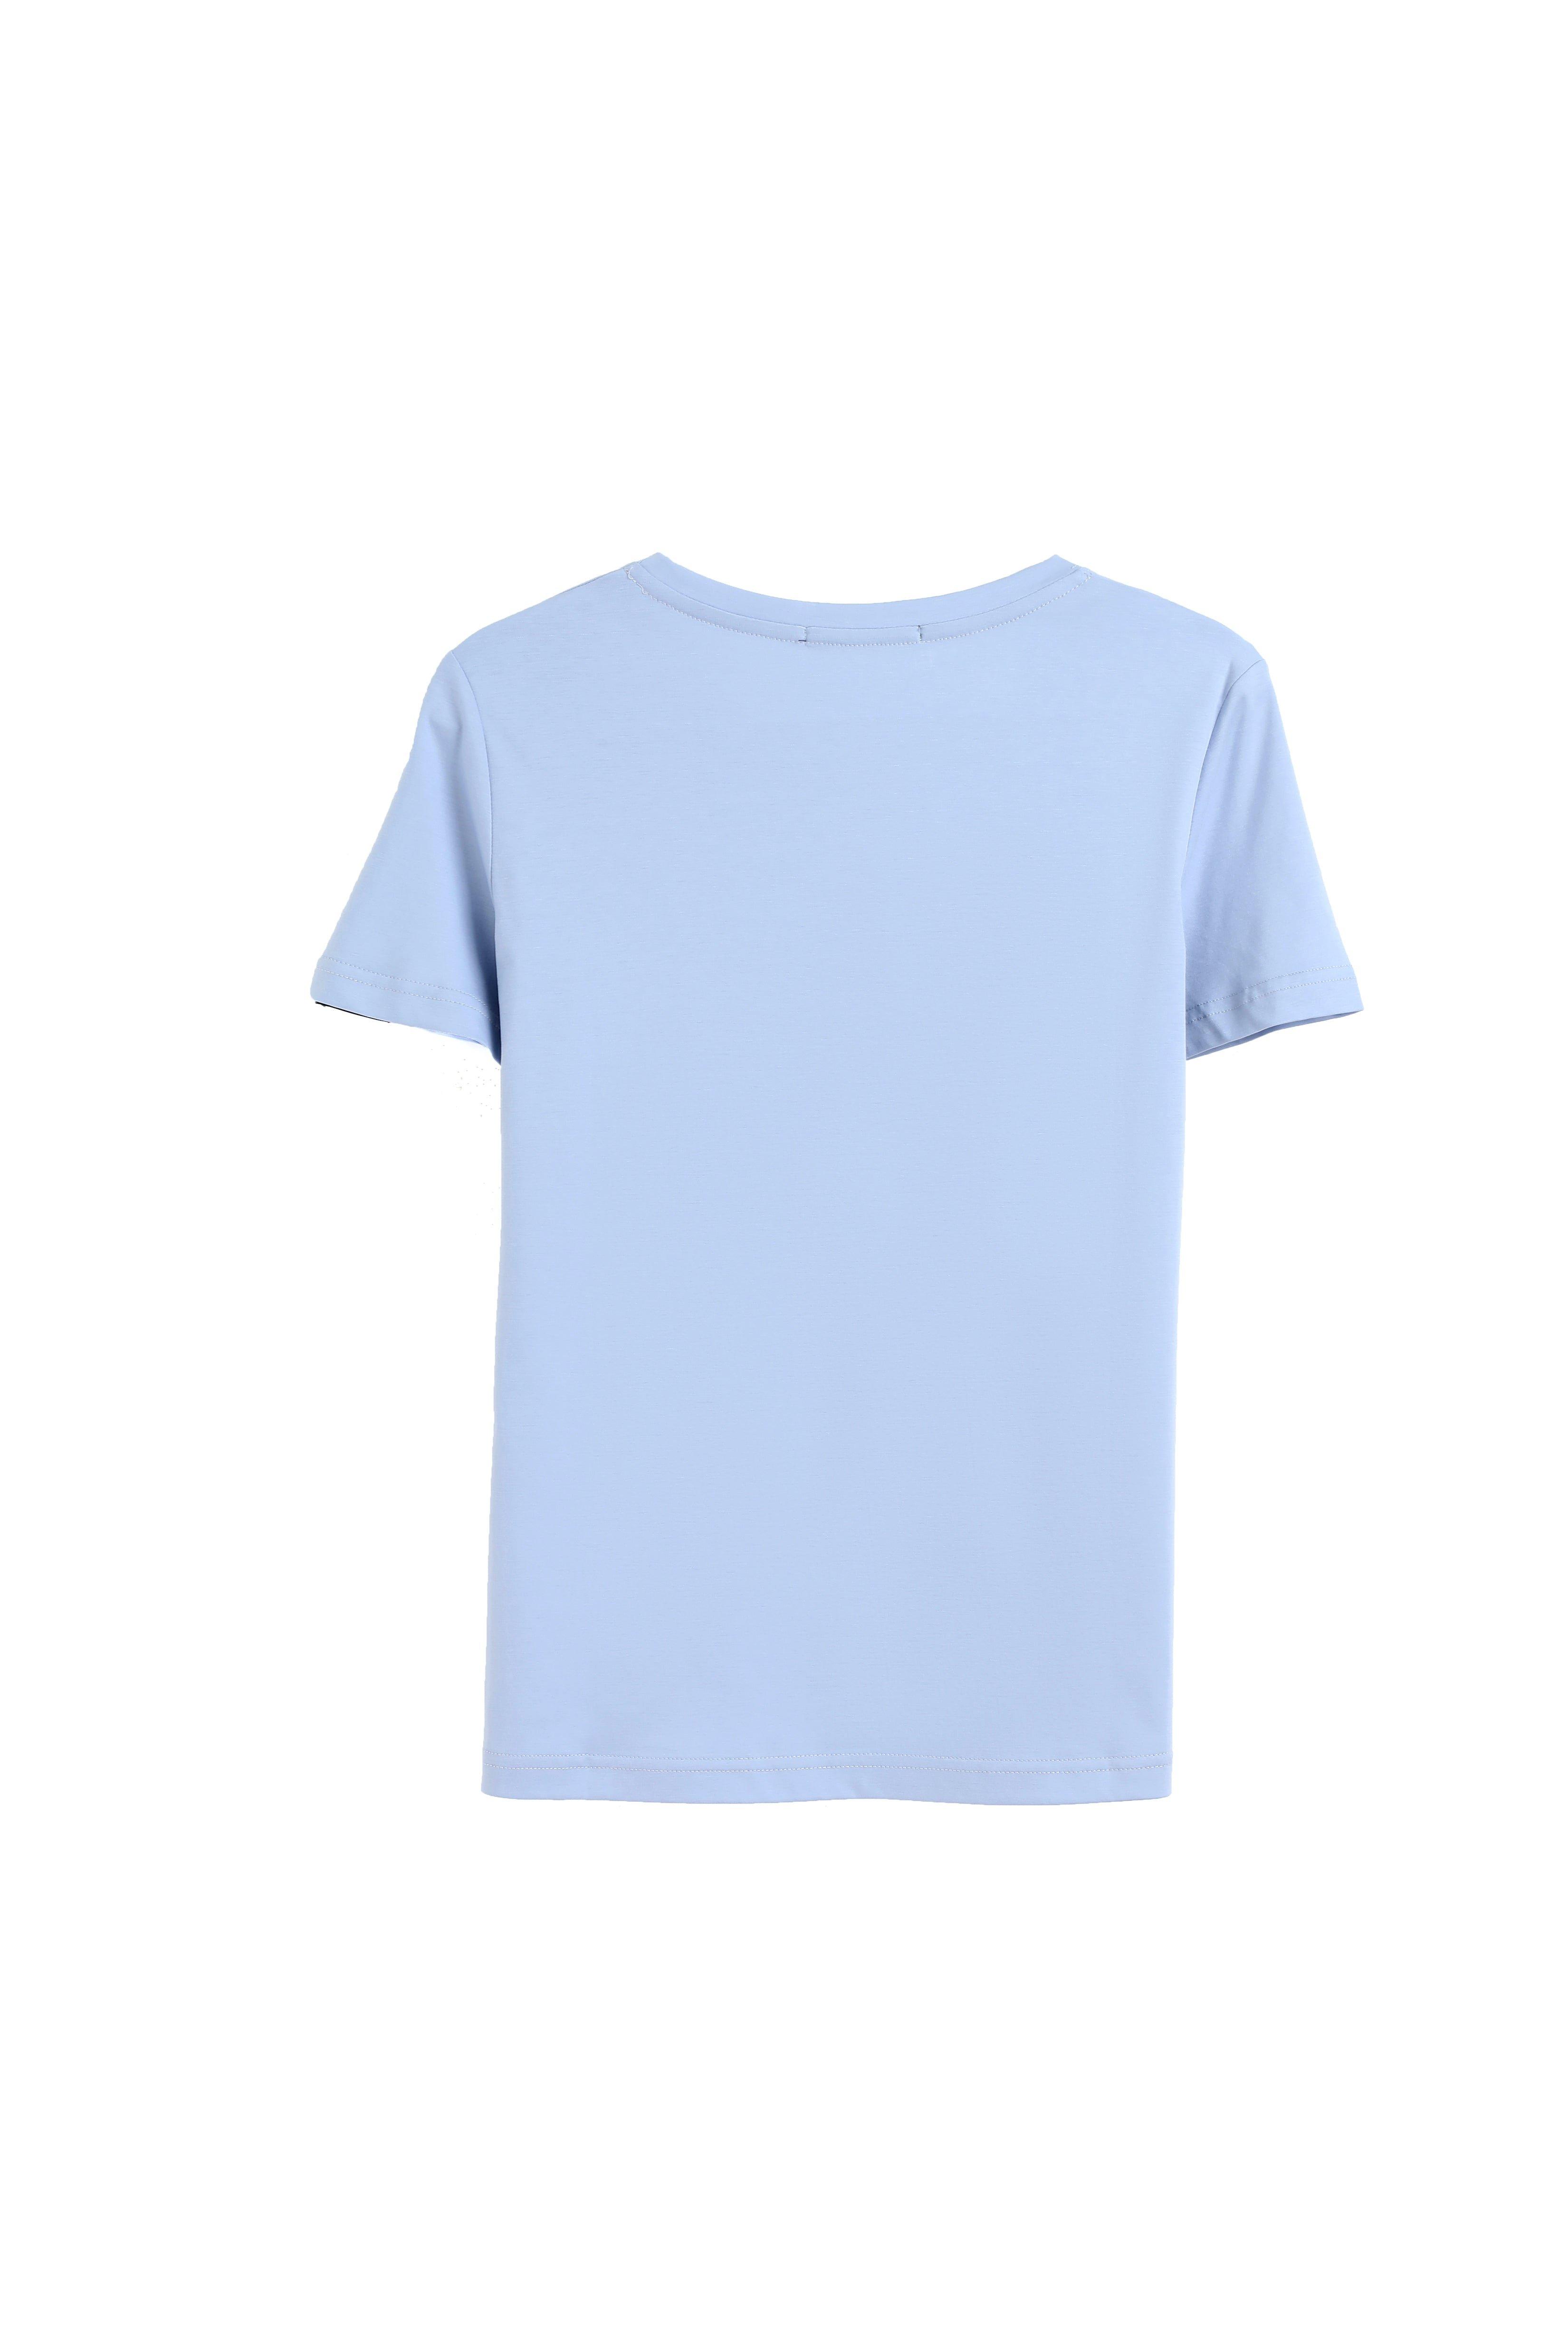 Bellemere New York  Grand T-shirt en coton à col rond 160G 